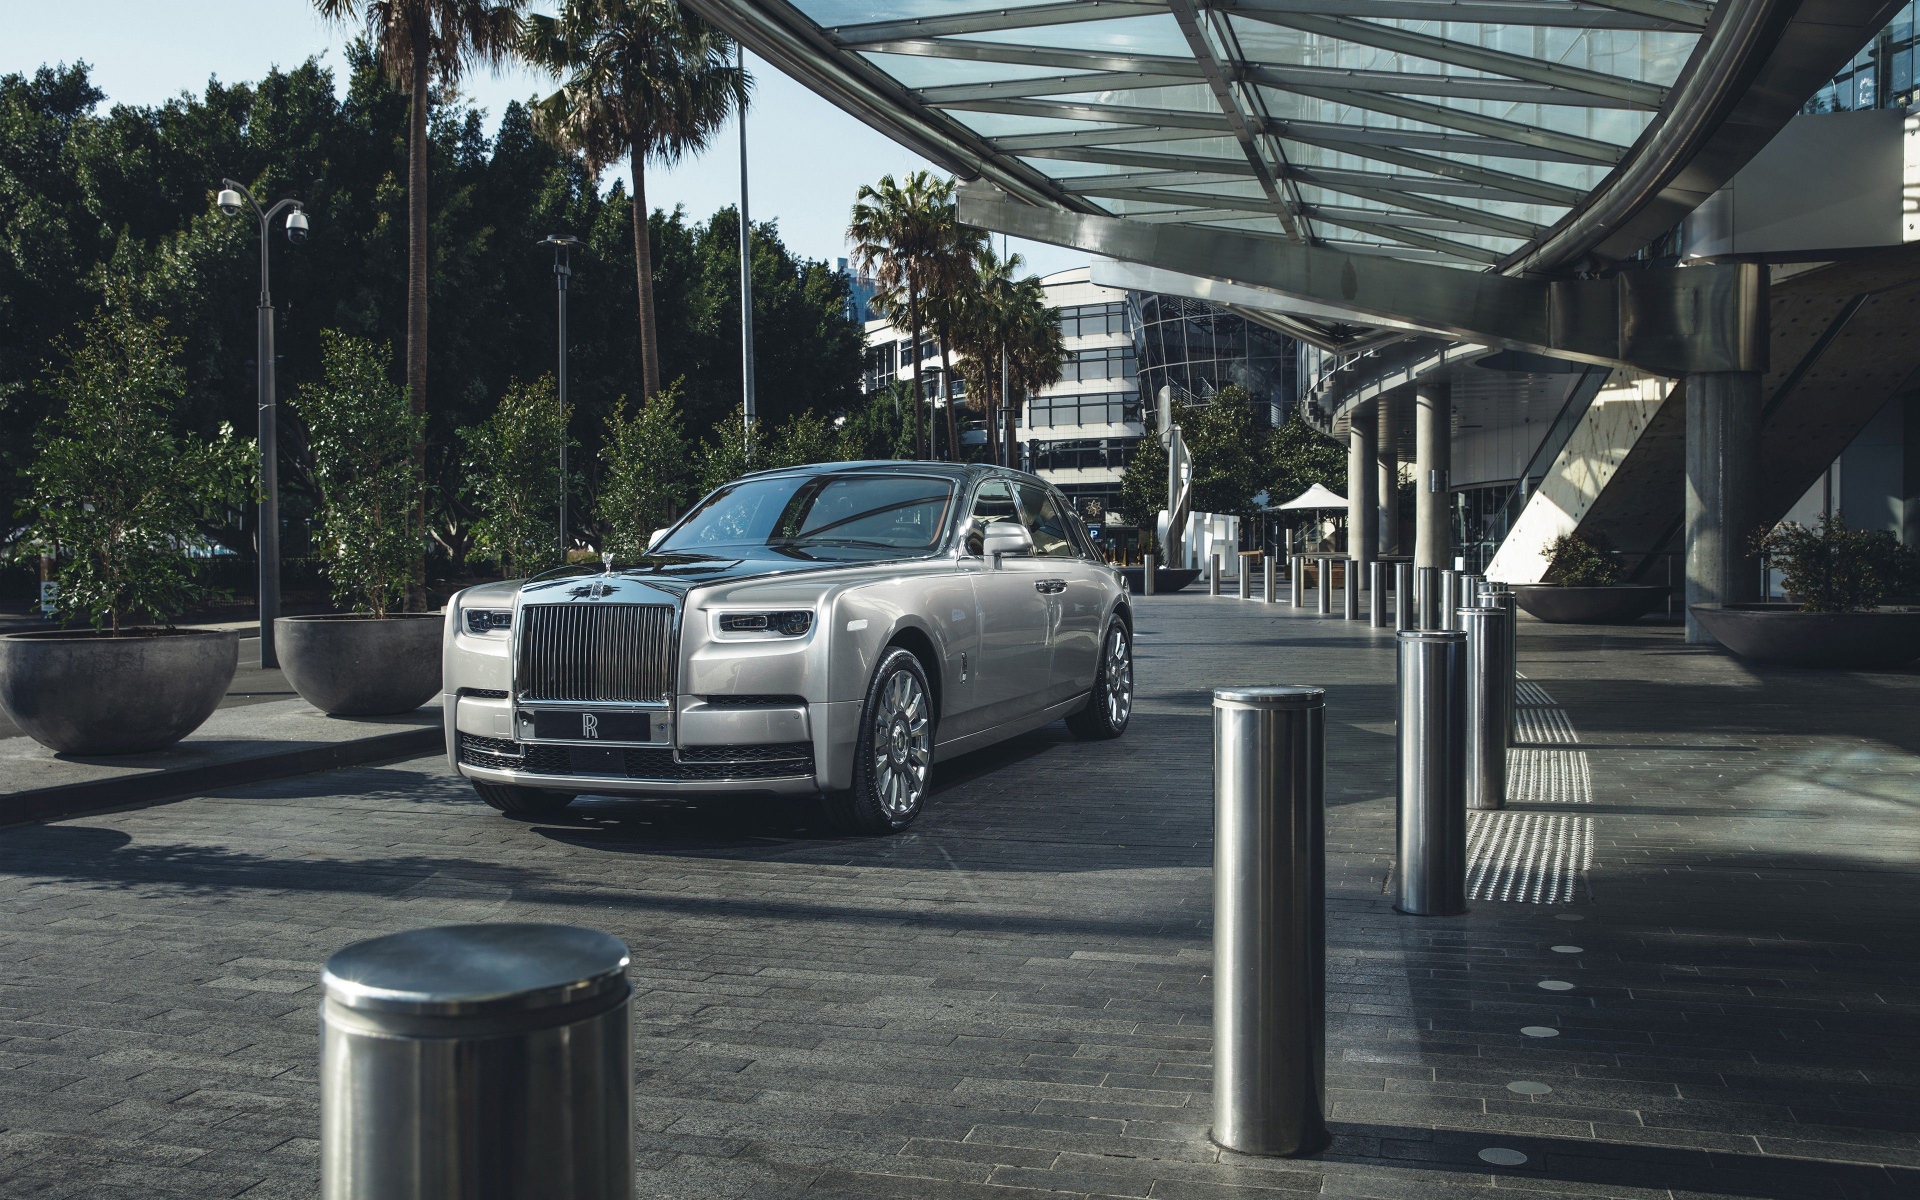 Silver stylish Rolls Royce Phantom 2018